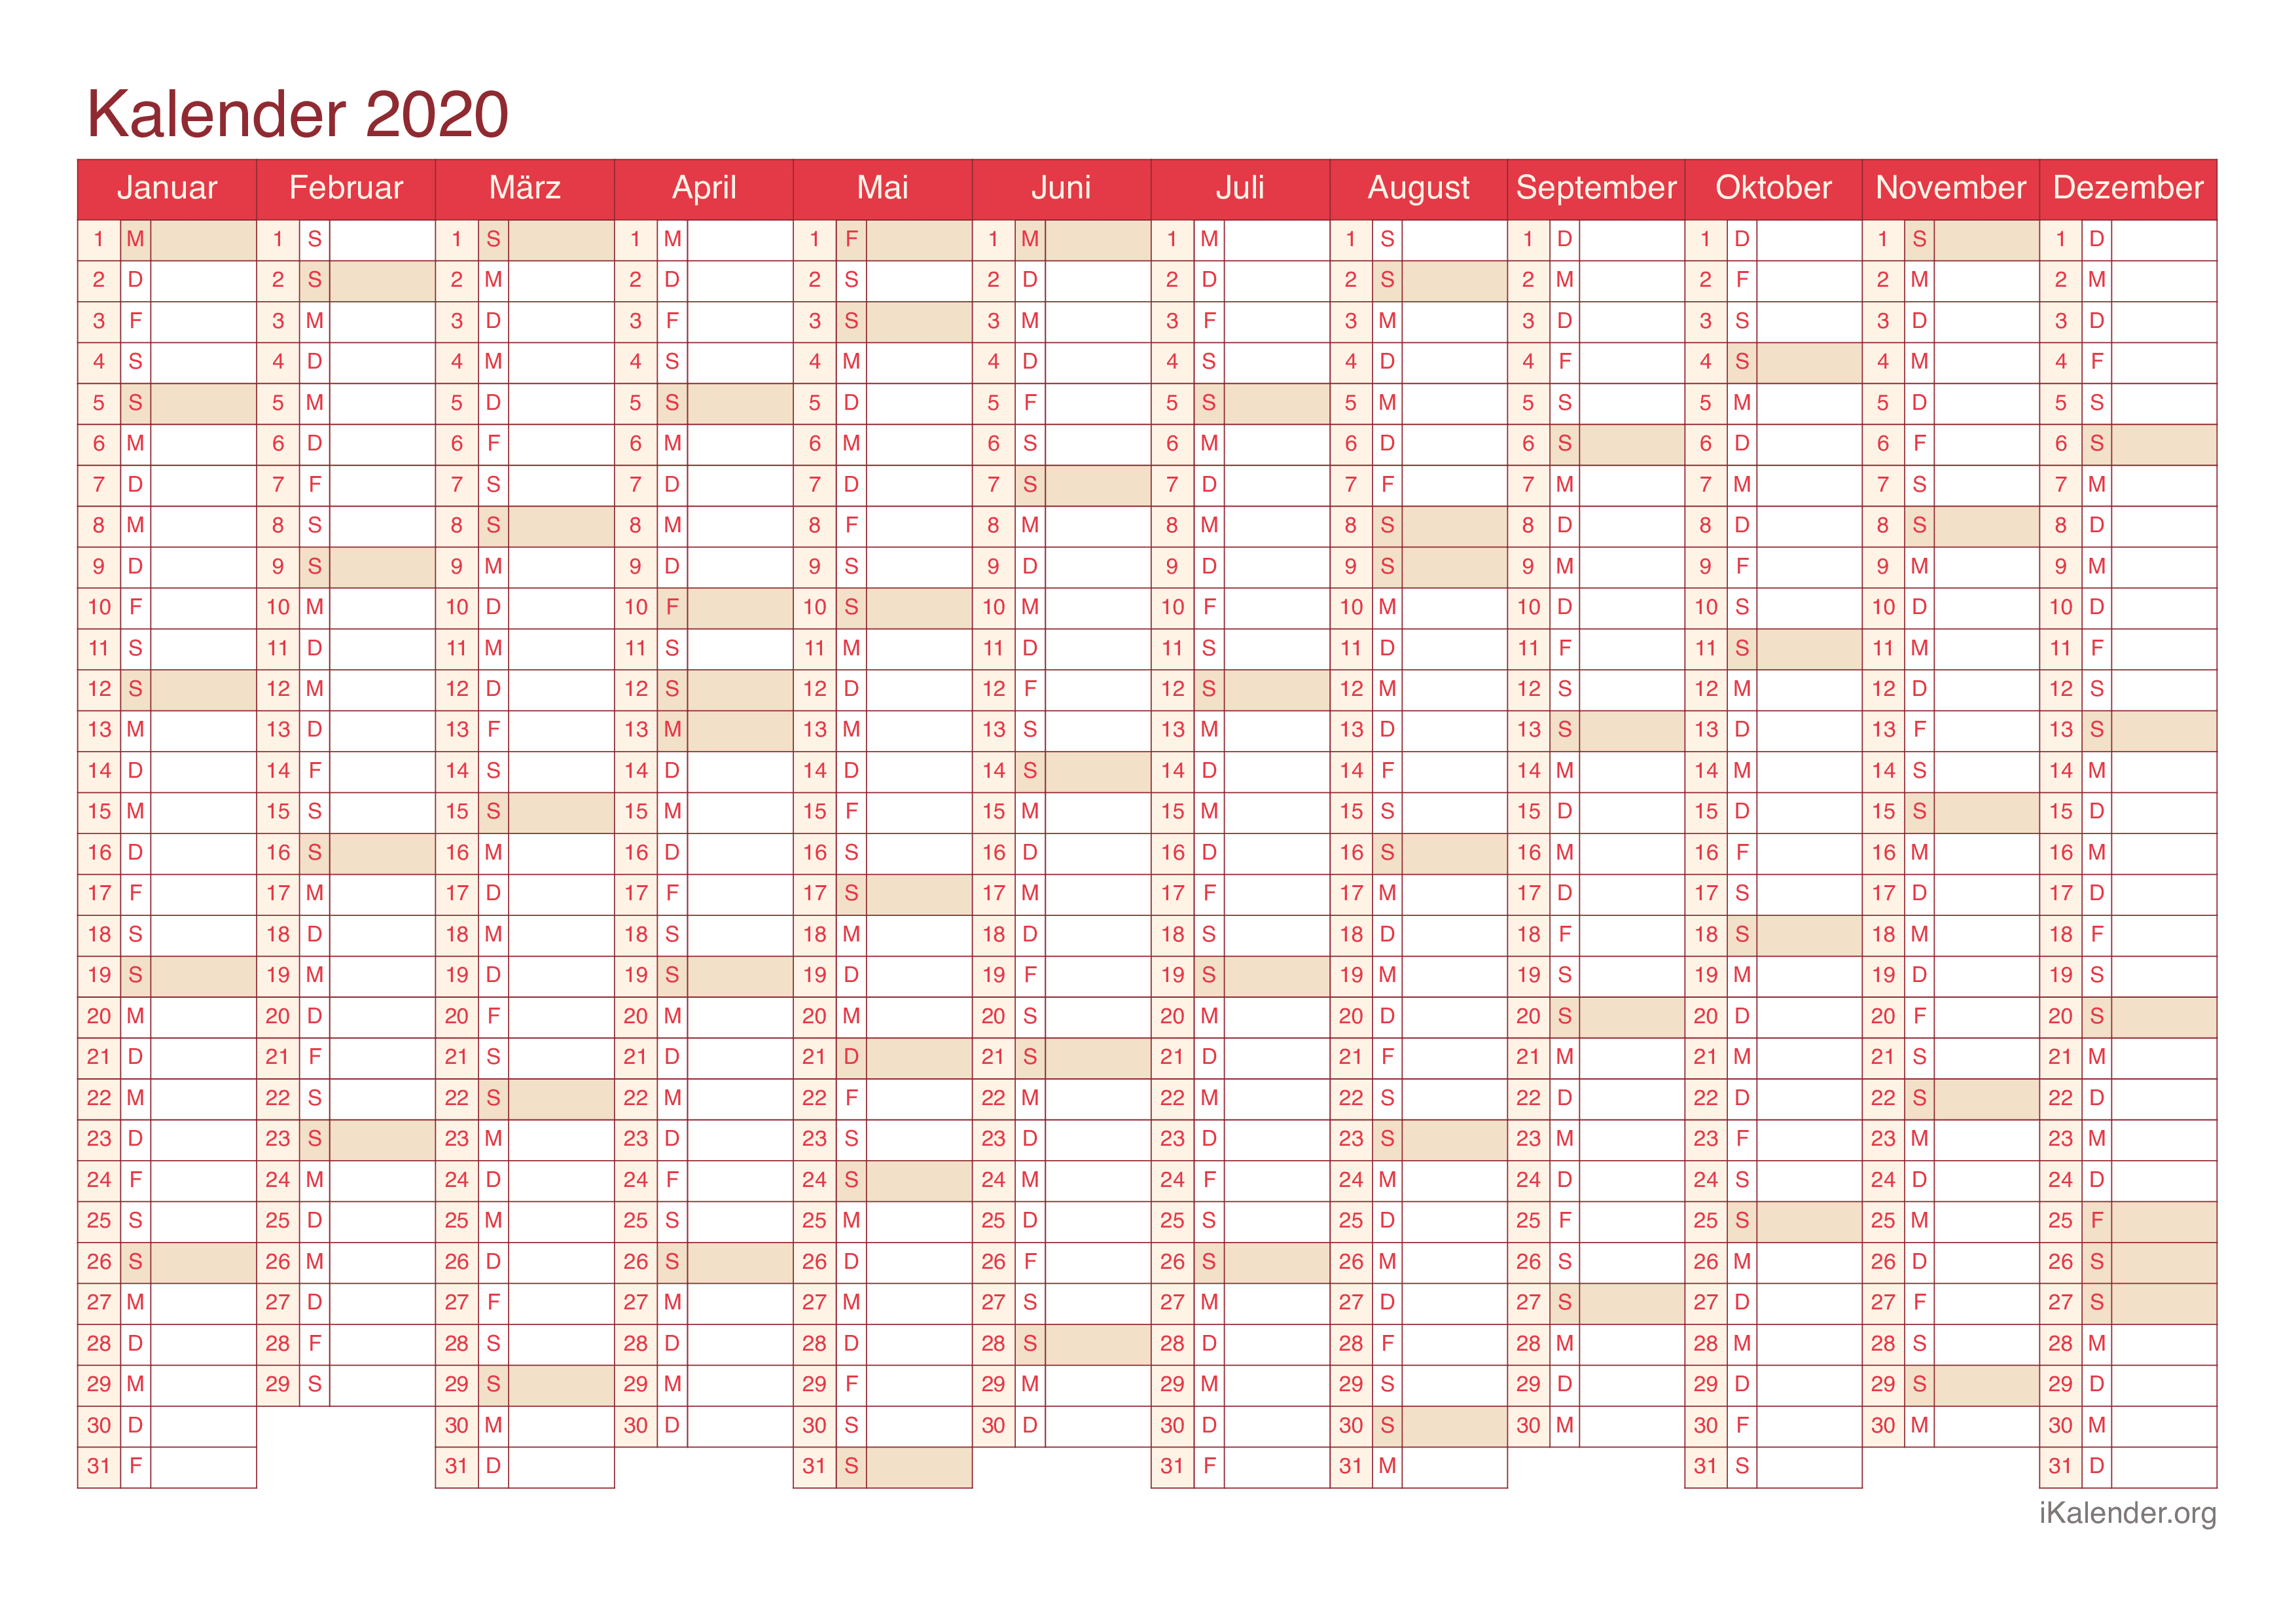 Jahreskalender 2020 - Cherry